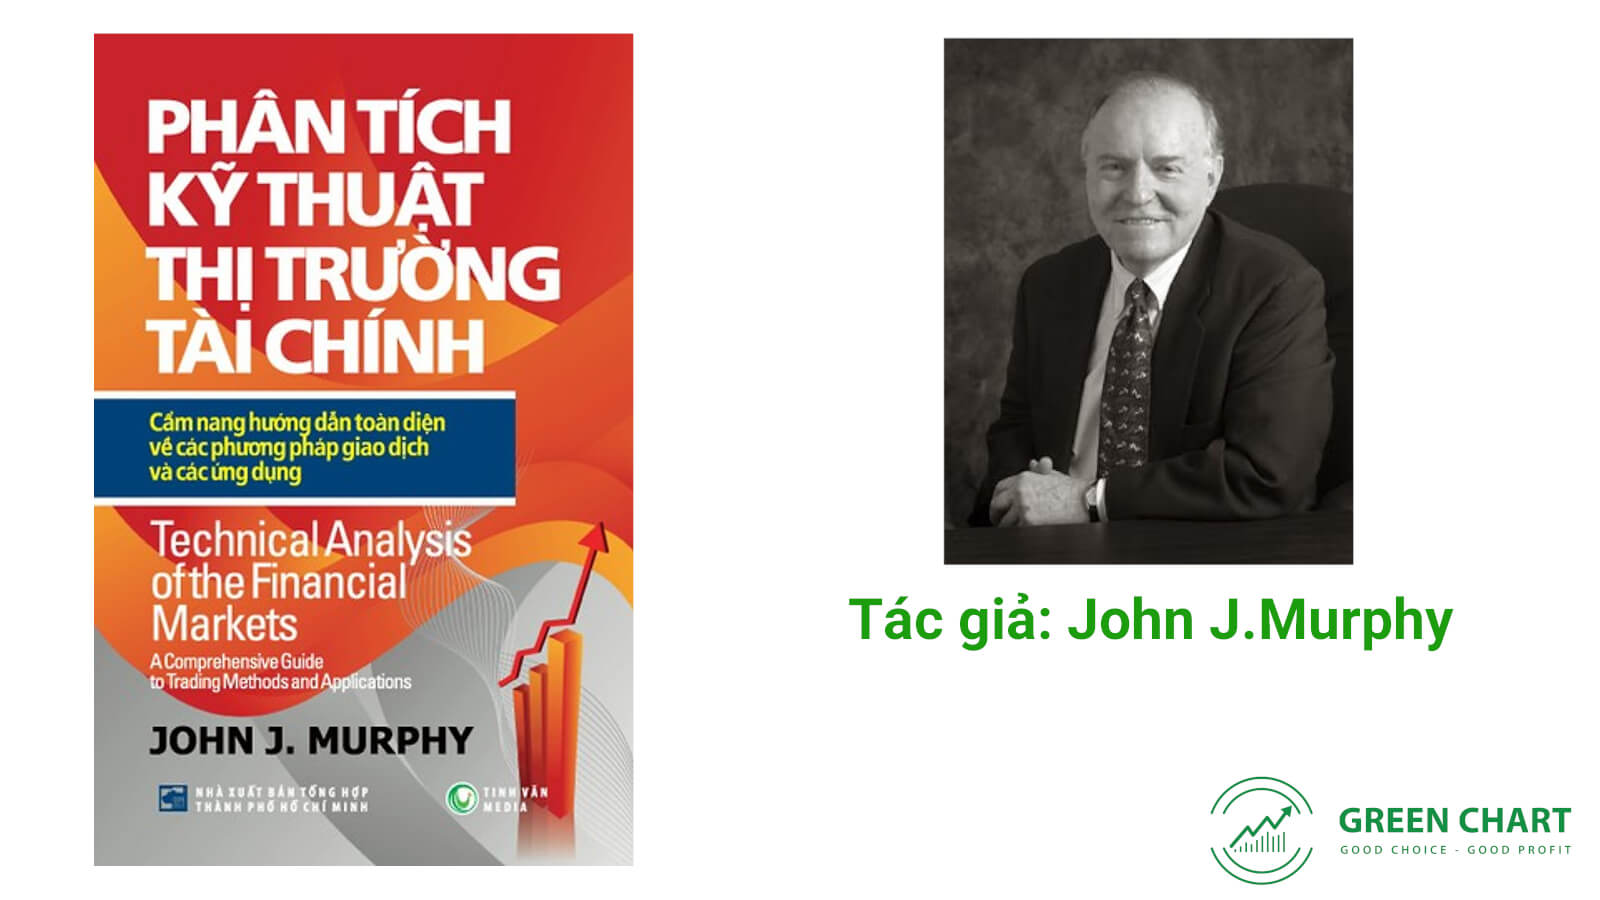 Phân tích kỹ thuật thị trường tài chính PDF - John J.Murphy